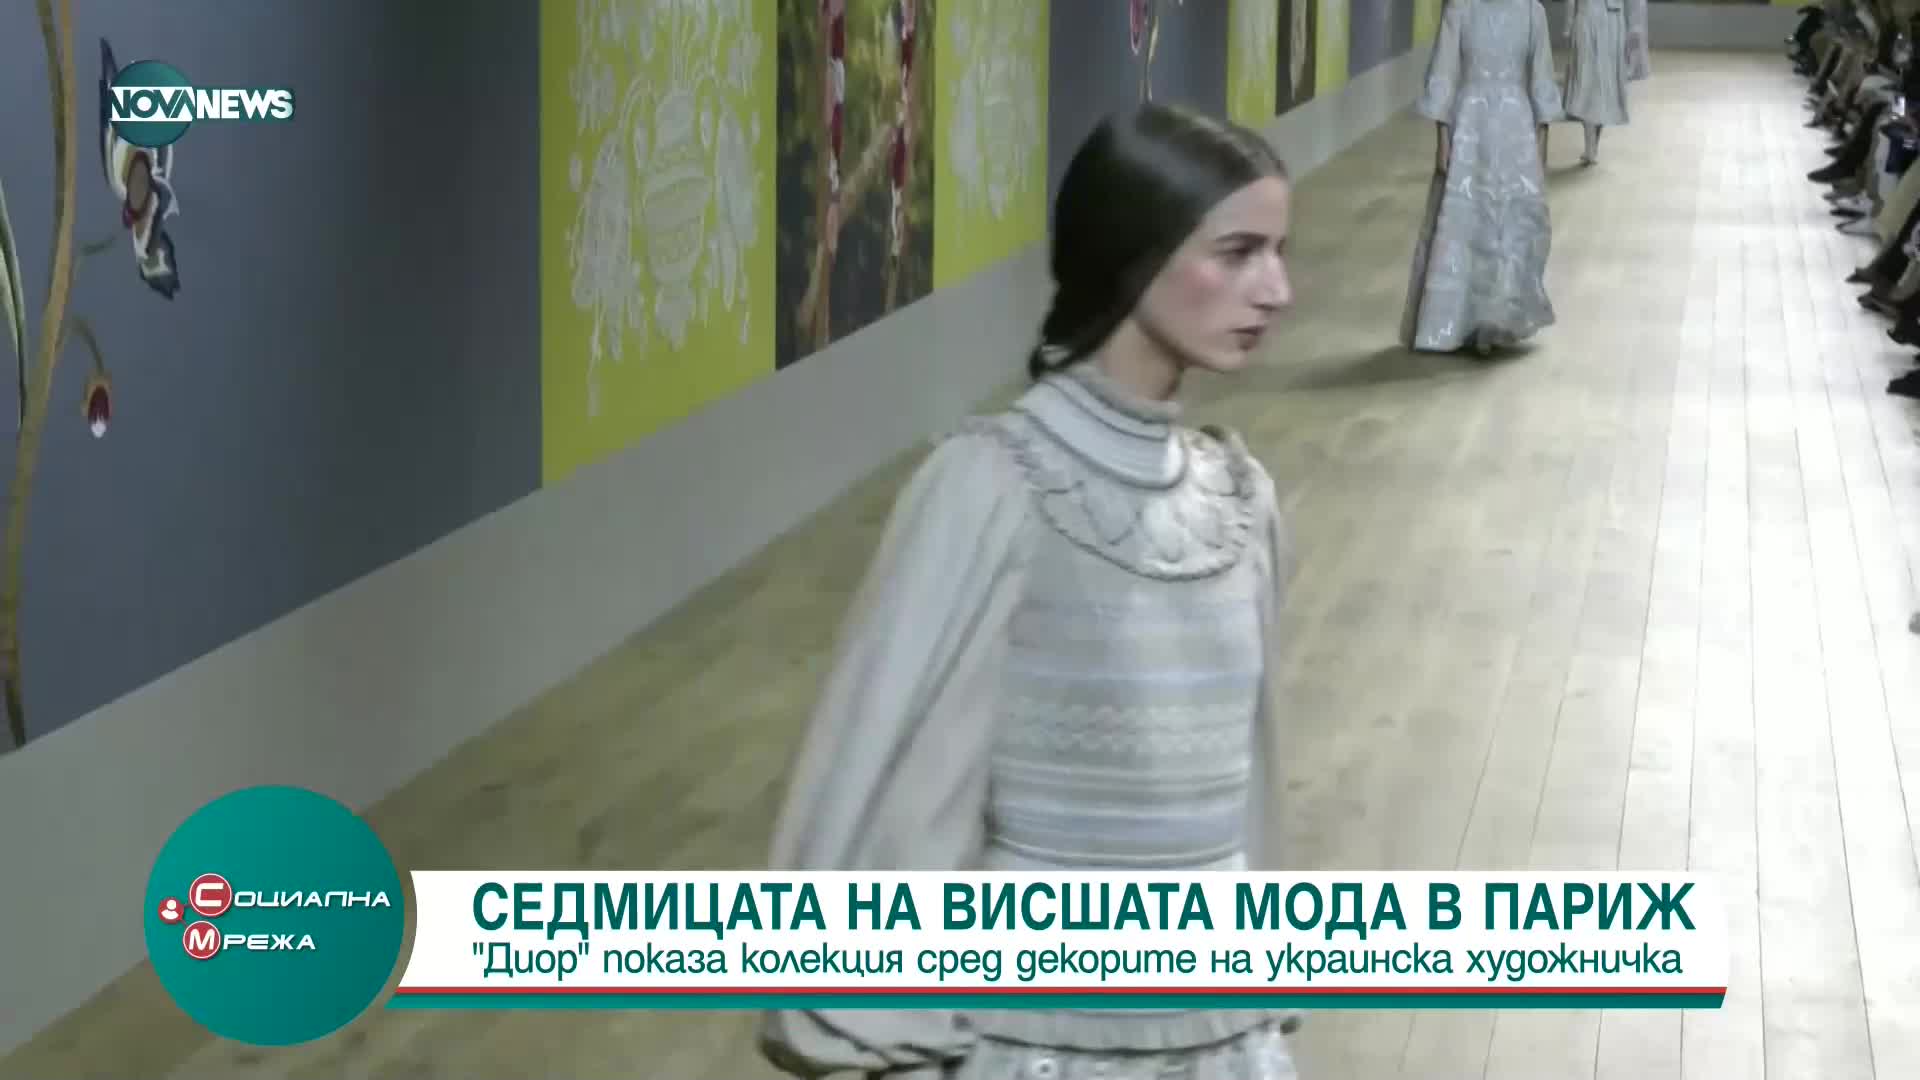 "Диор" представи колекция сред декорите на украинска художничка